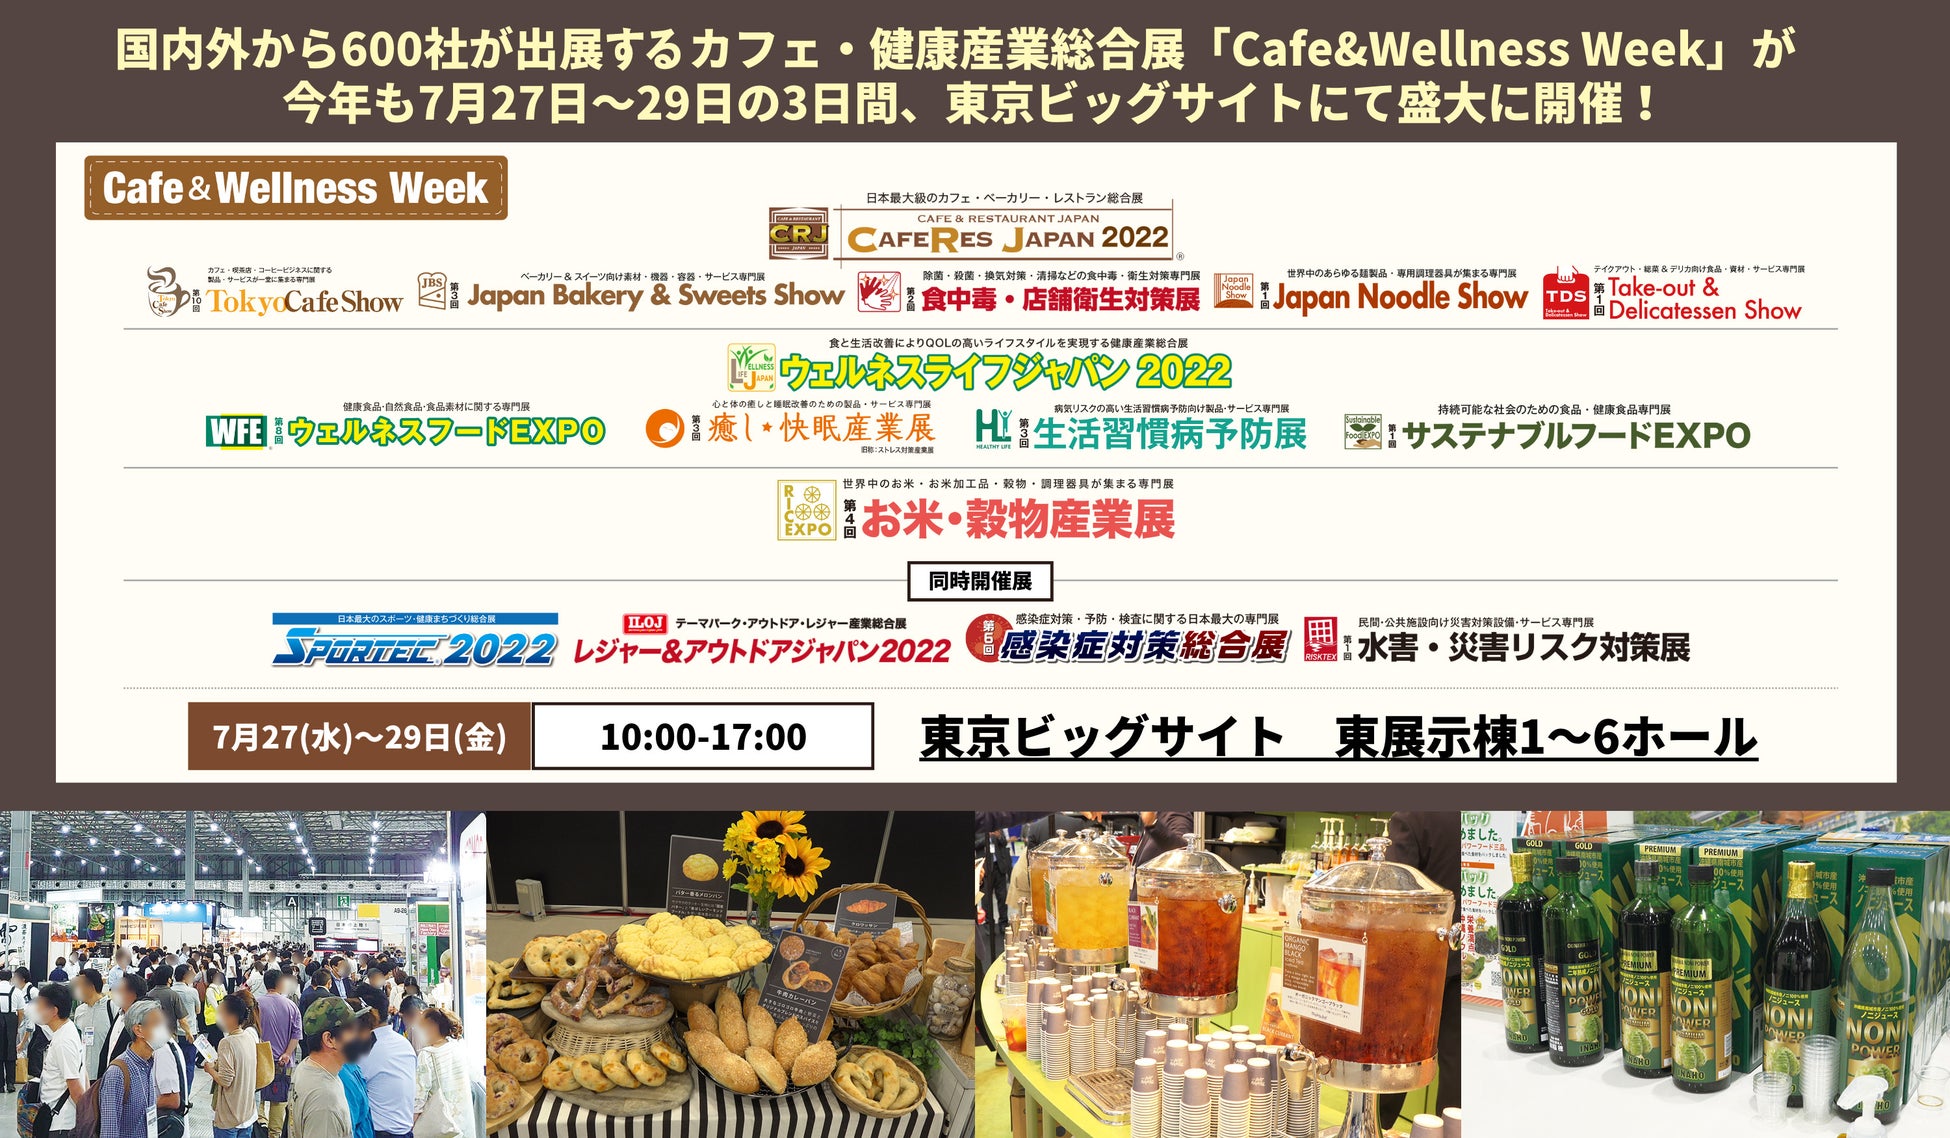 「米粉のビーガンおにぎり宇治茶マフィン」の
オンラインお取り寄せ販売を7月26日より開始